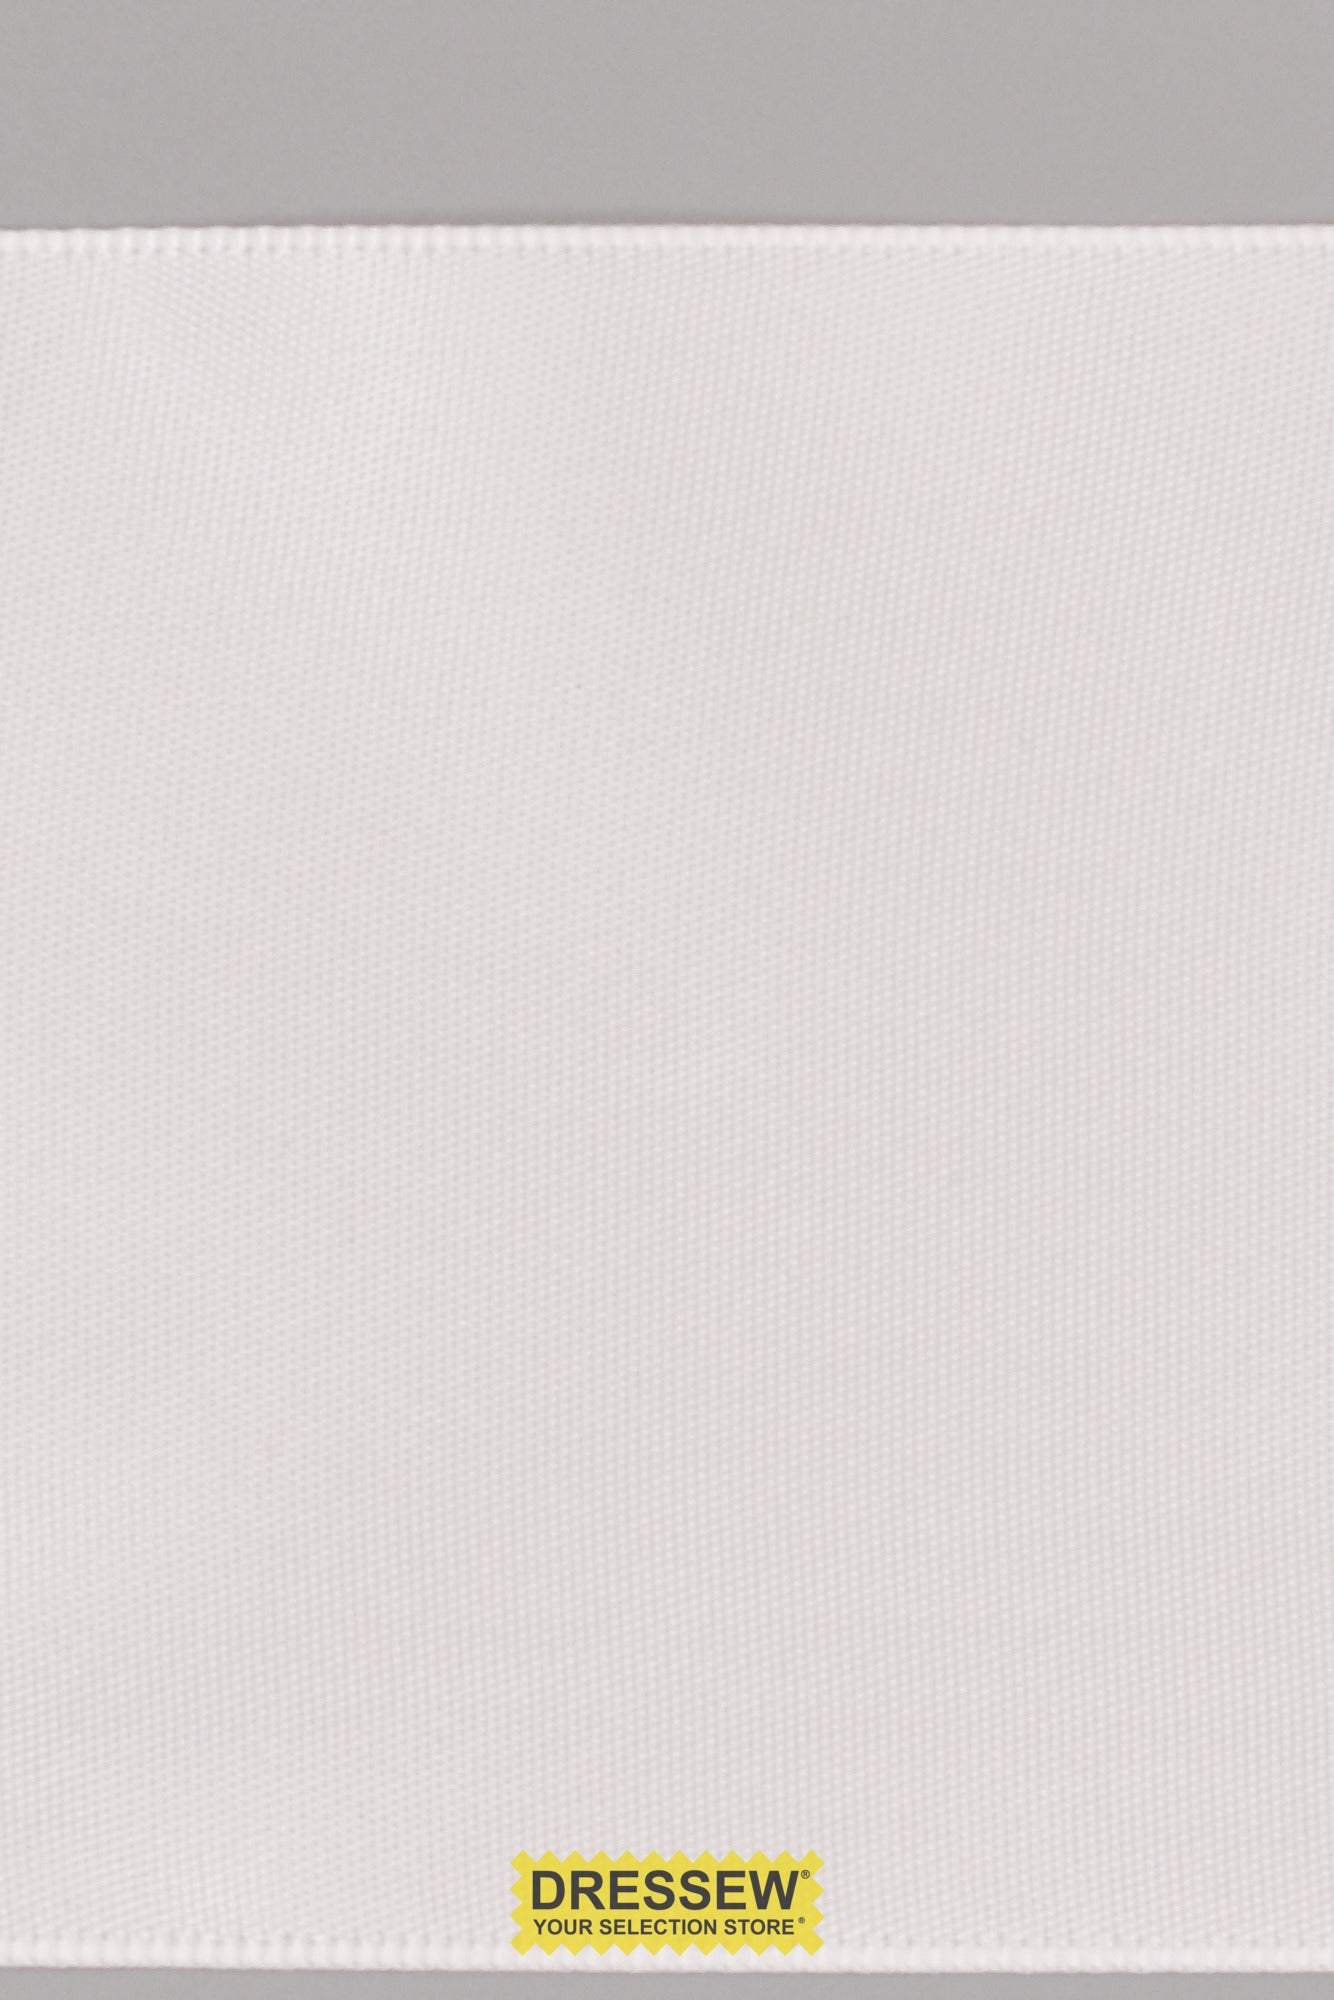 Single Face Satin Ribbon 75mm (3") White